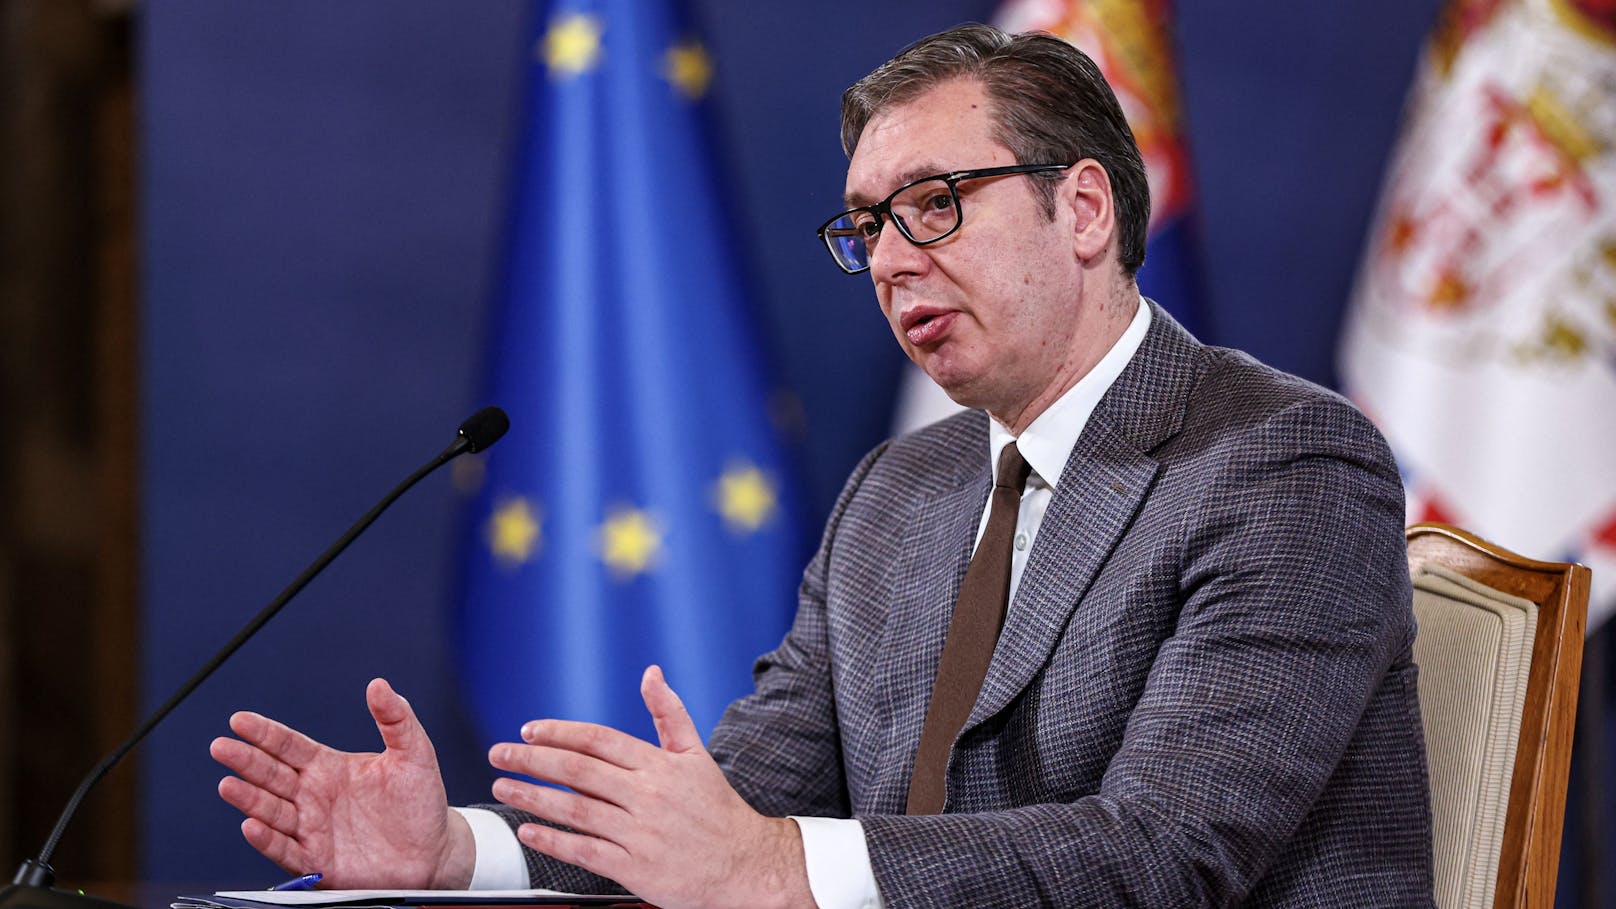 Vučić's Macht bröckelt – Serbien-Präsident muss zittern